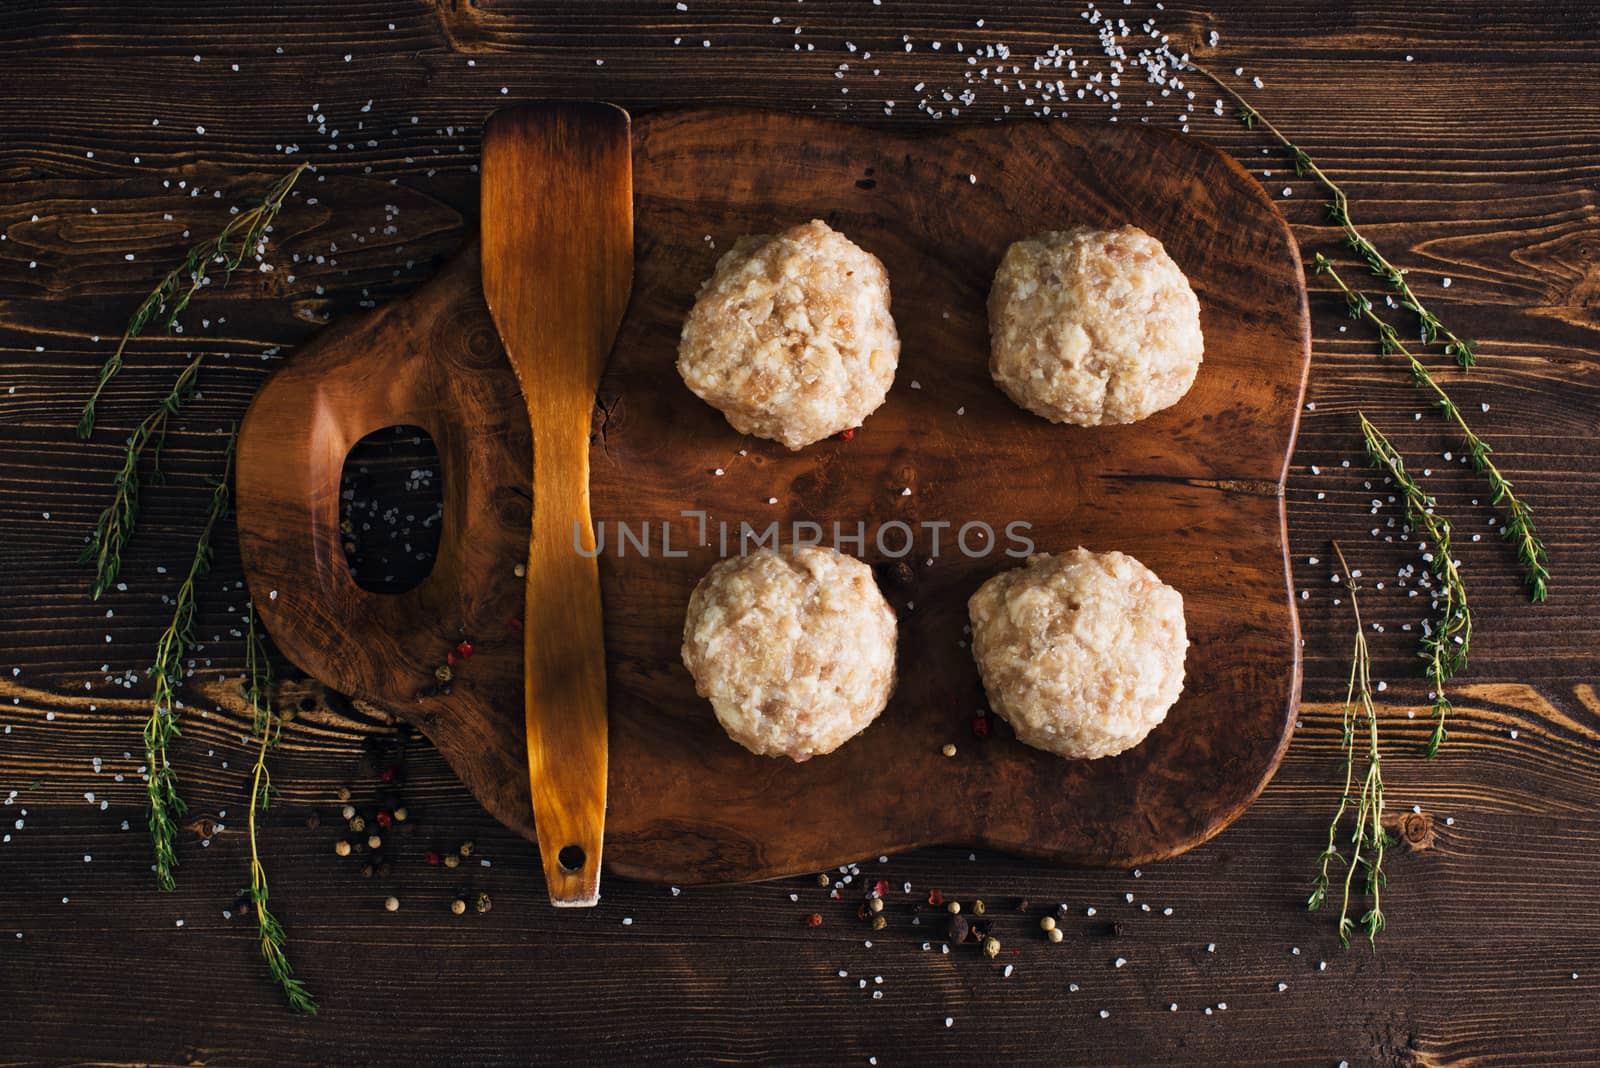 Uncooked meatballs on a dark wooden board by kzen